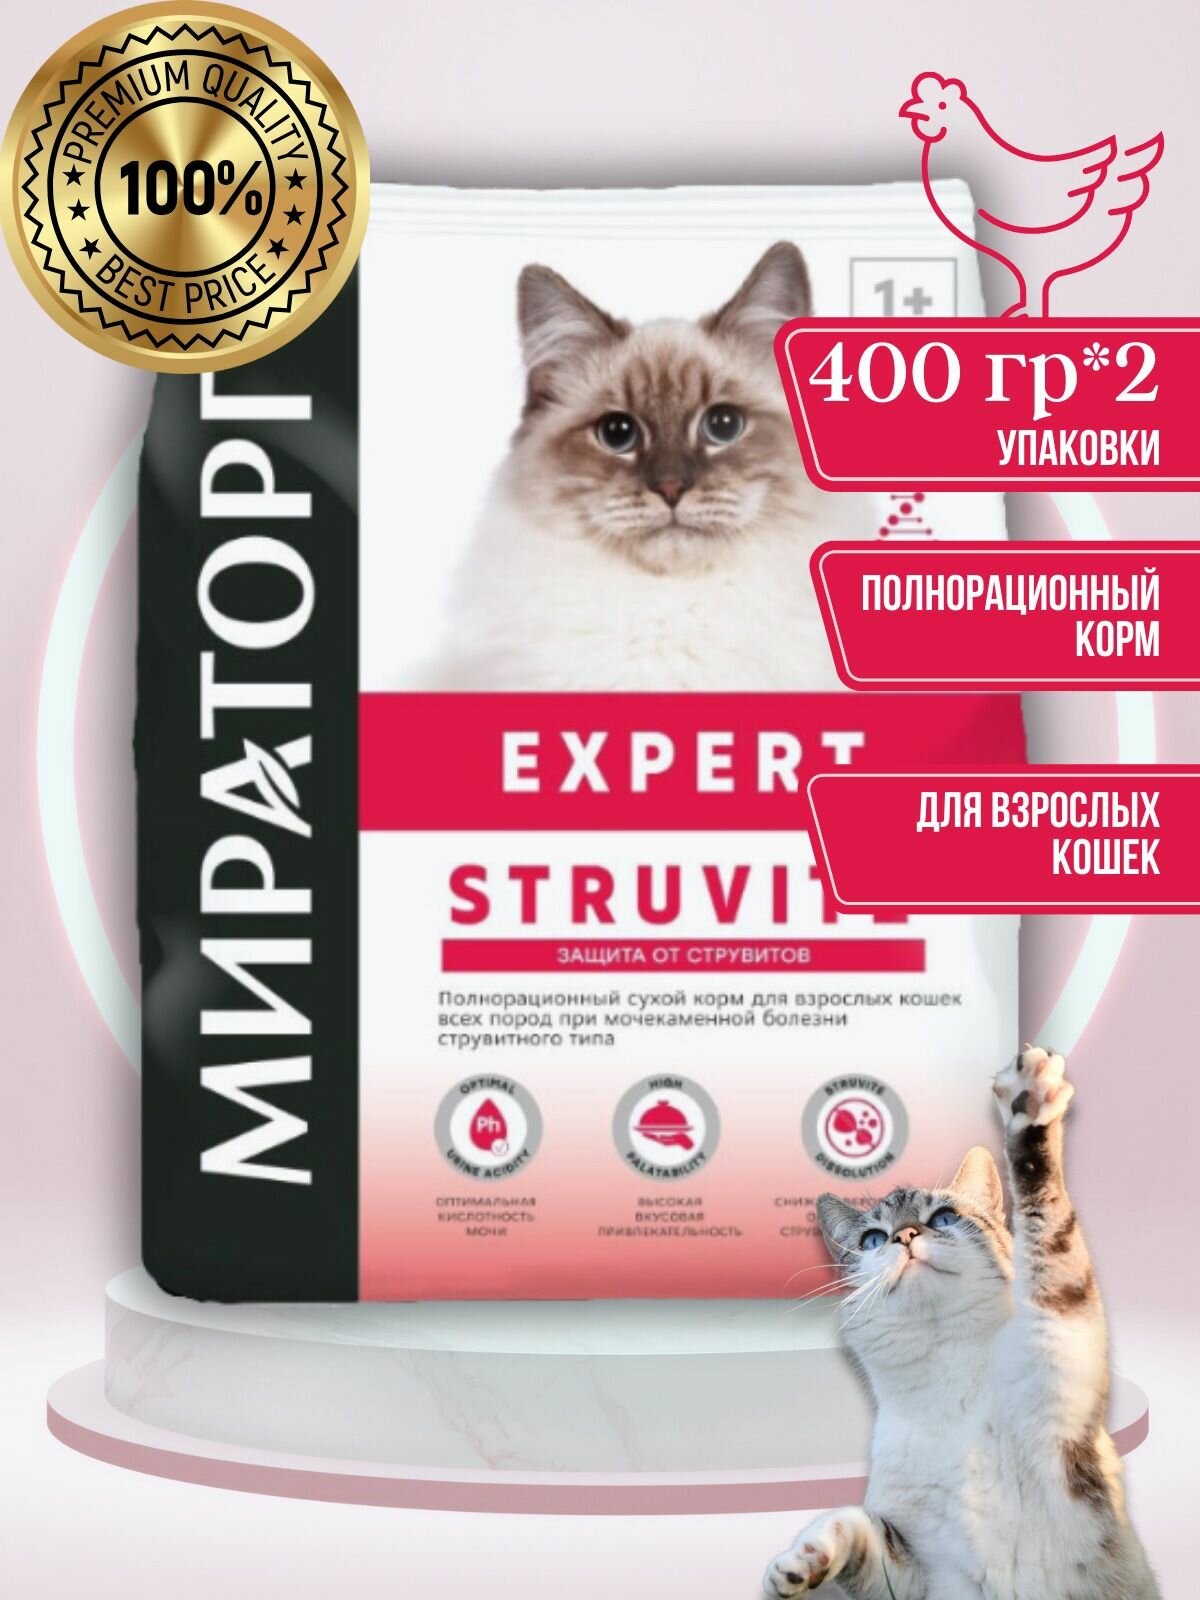 Корм Expert Struvite для взрослых кошек всех пород при мочекаменной болезни струвитного типа, 2 упаковки/400 грамм.